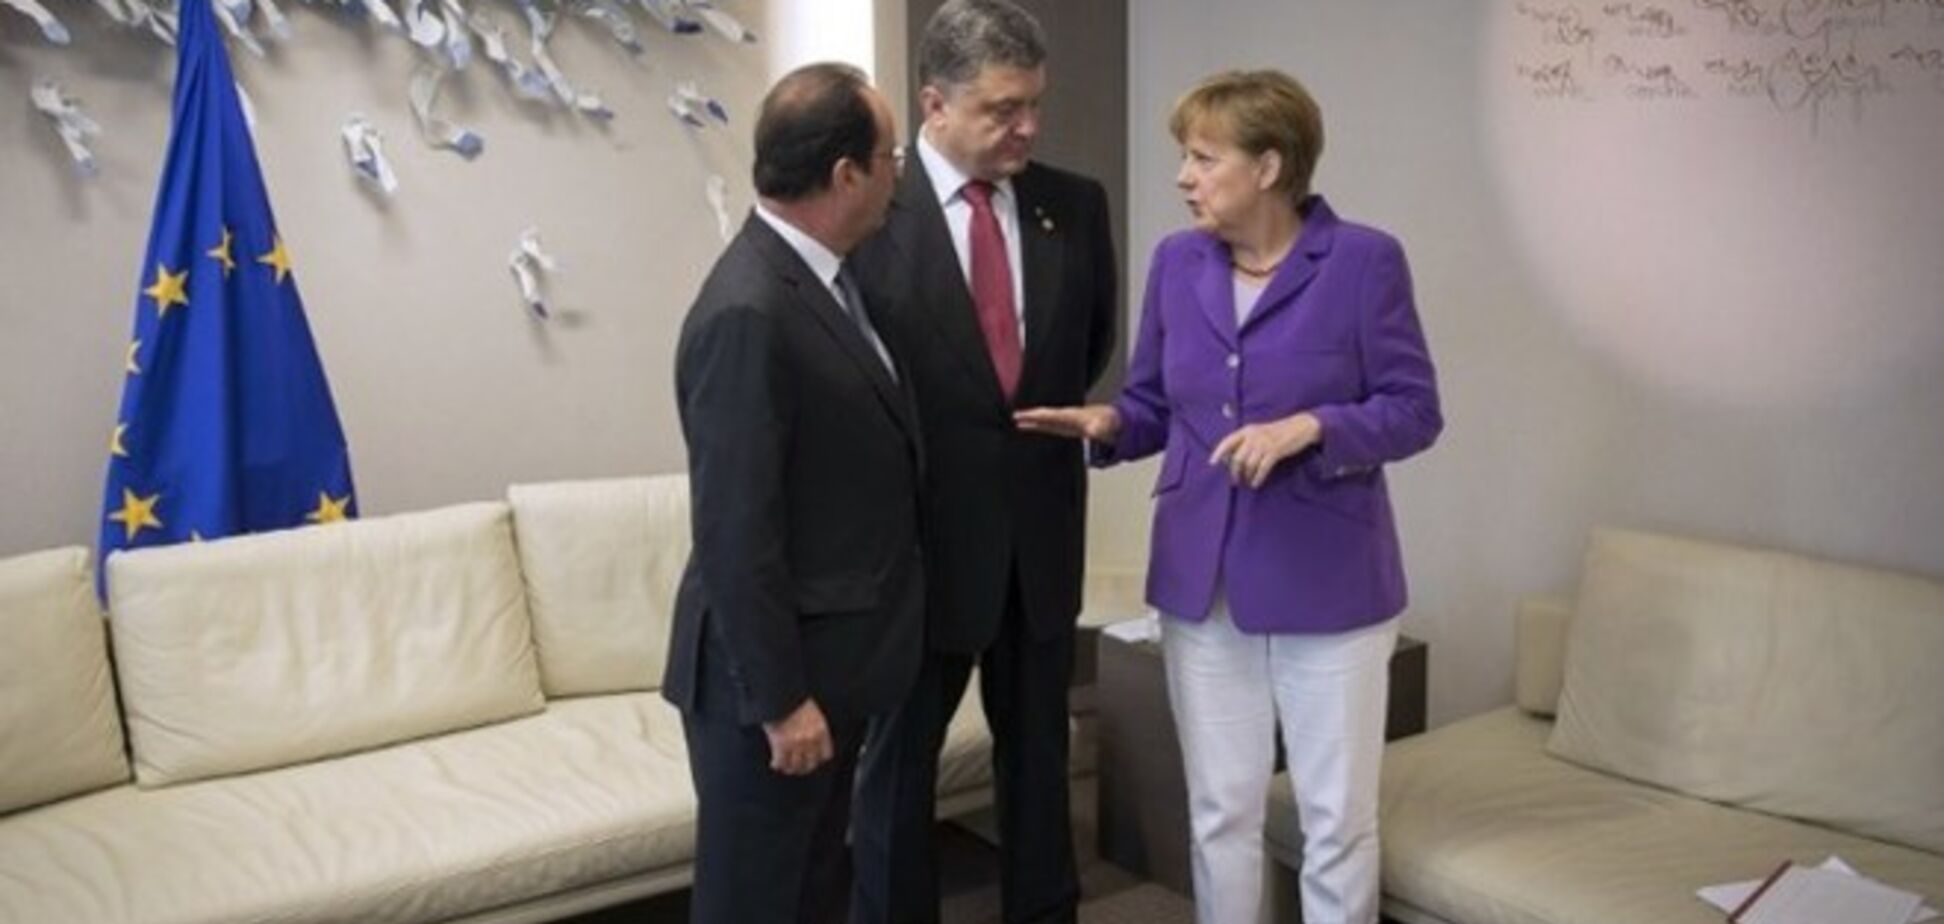 Порошенко, Олланд и Меркель определились с оптимальным форматом переговоров по Донбассу